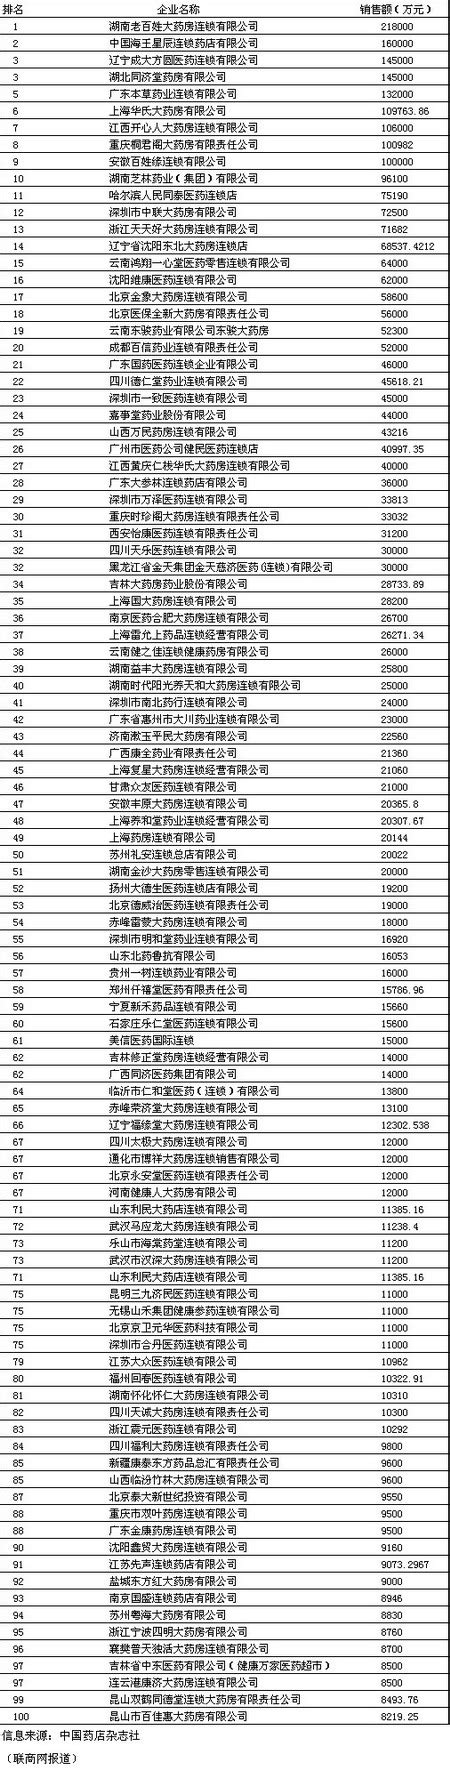 2006年中国连锁药店排行榜（销售额）_联商网